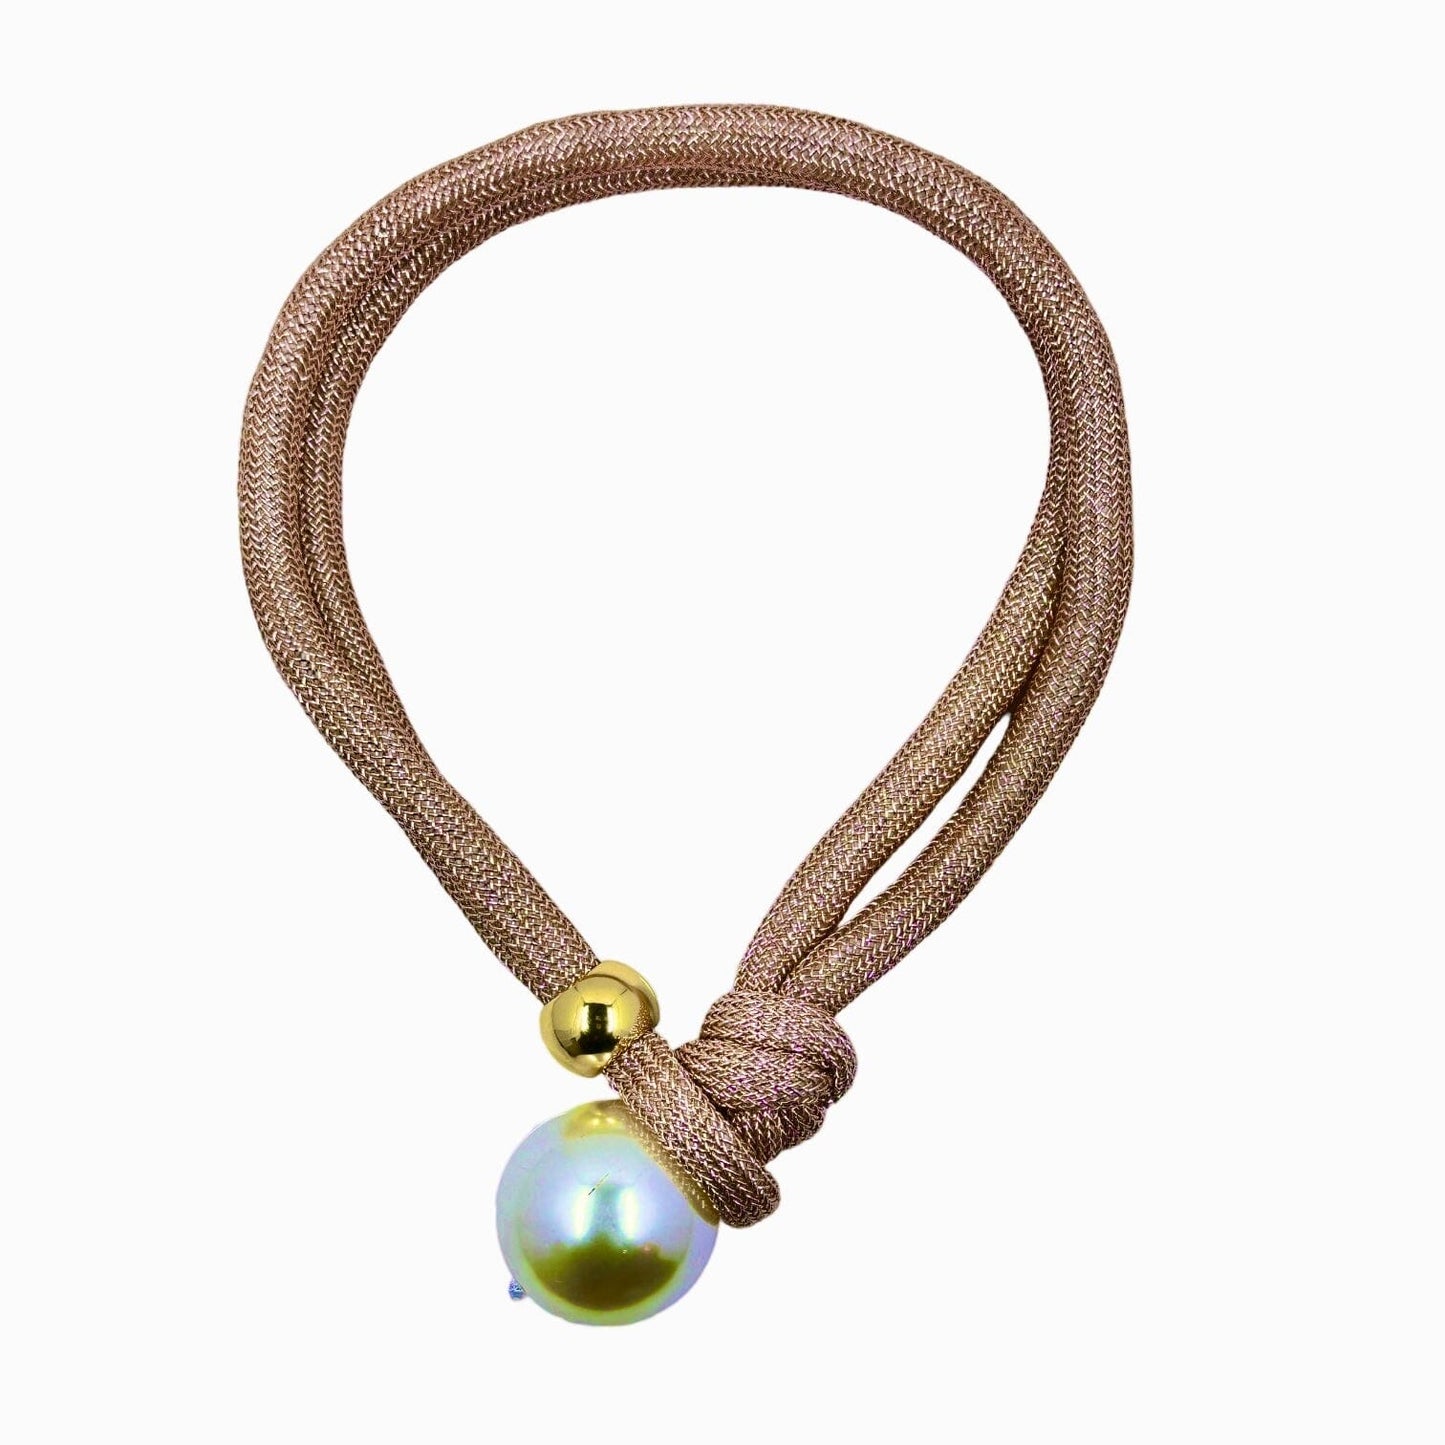 Handmade Unique Adjustable Rope Necklace with Big Pearl Necklaces Trendzio 